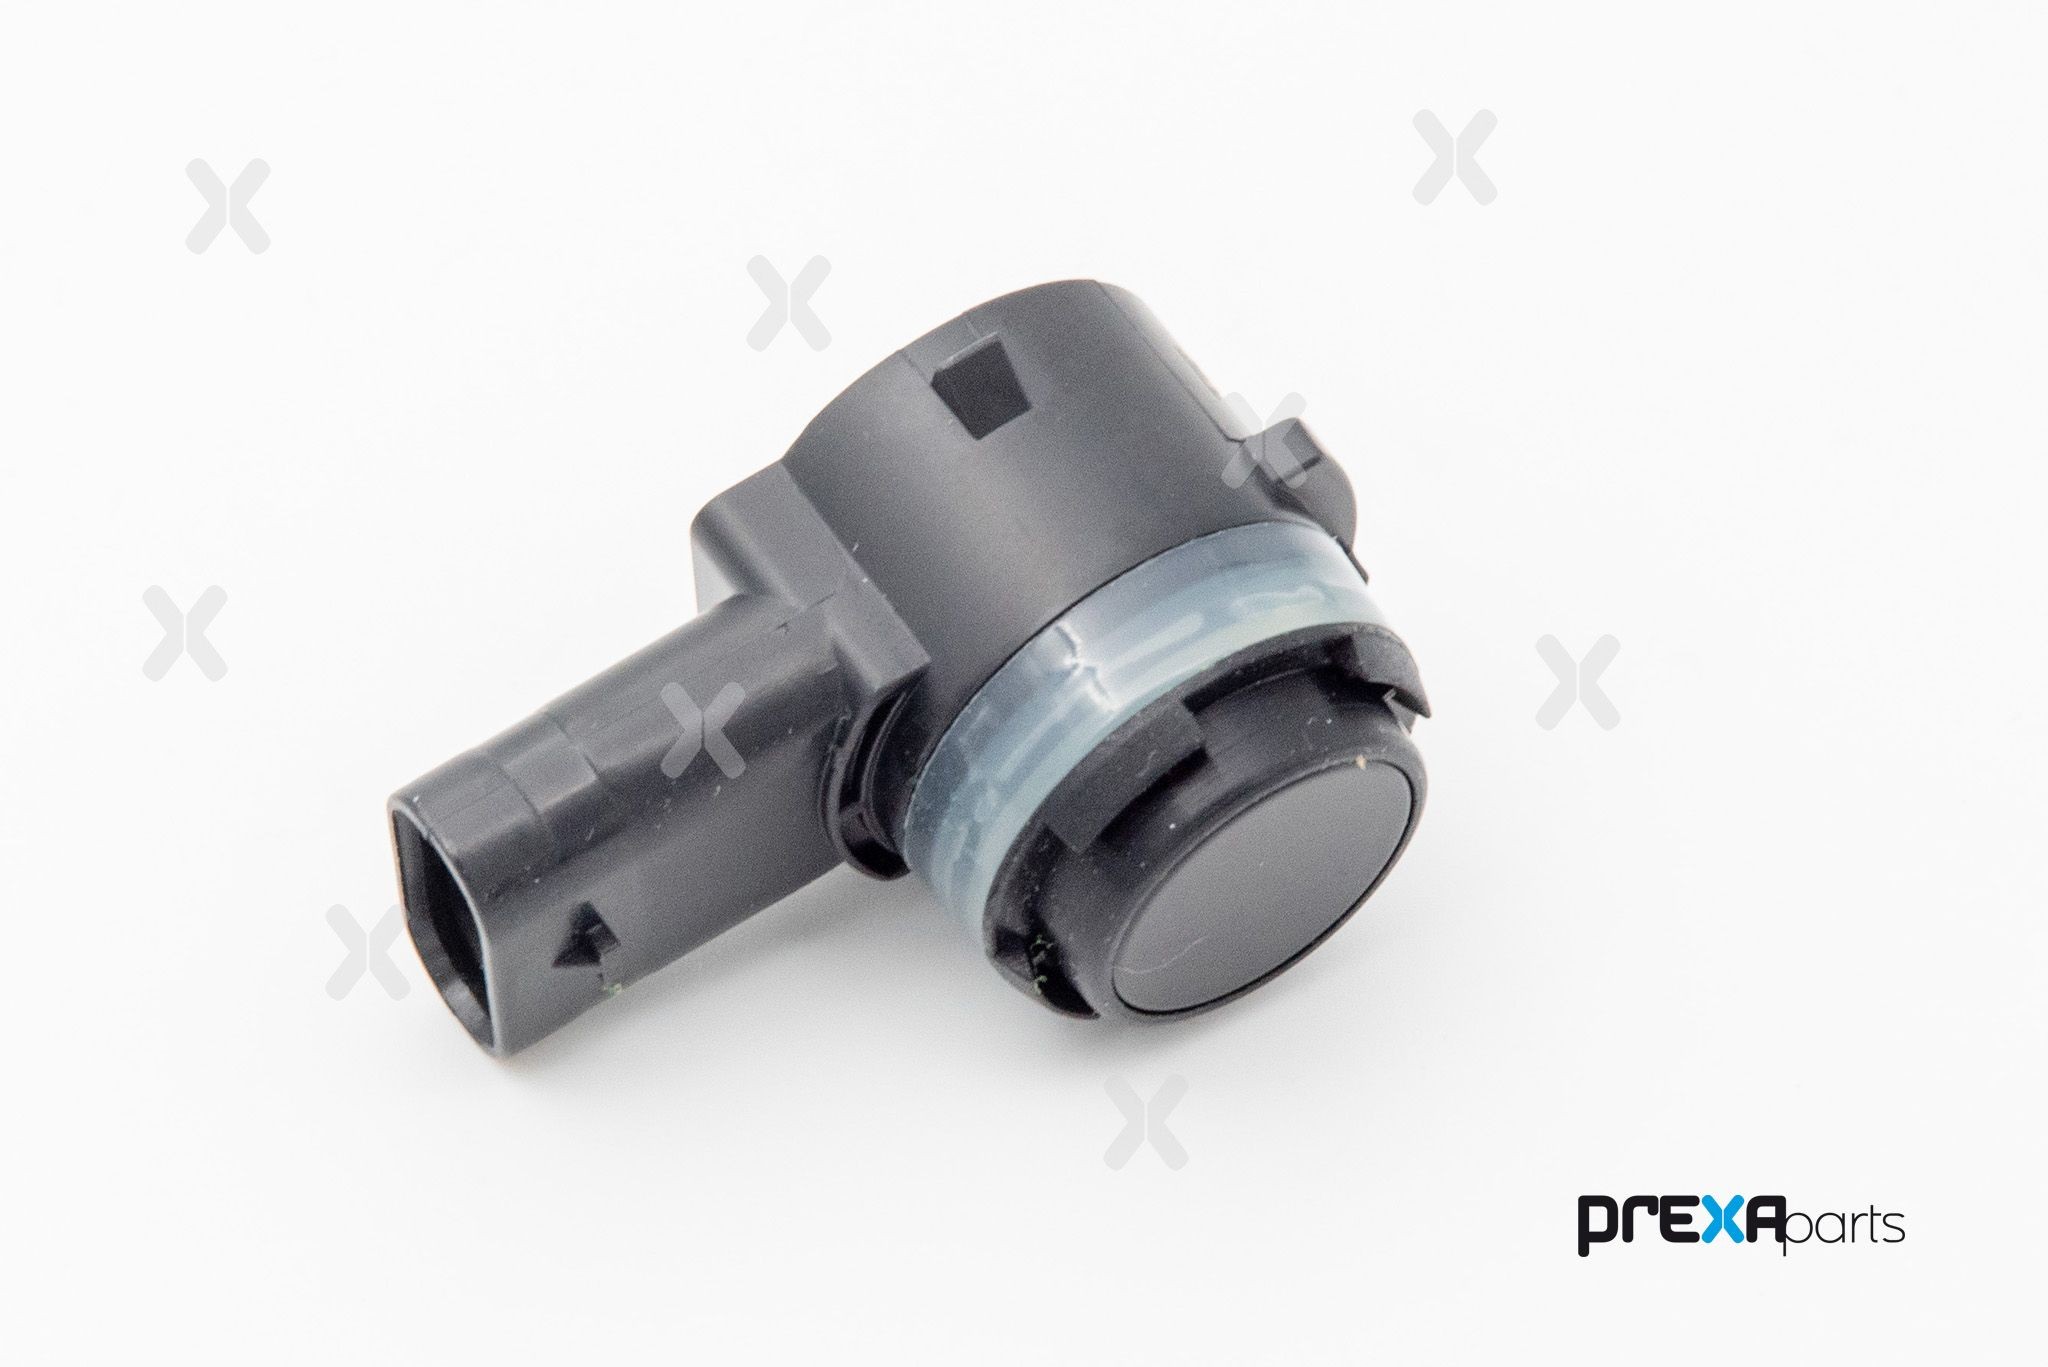 PREXAparts P303014 Parking sensor 9283760